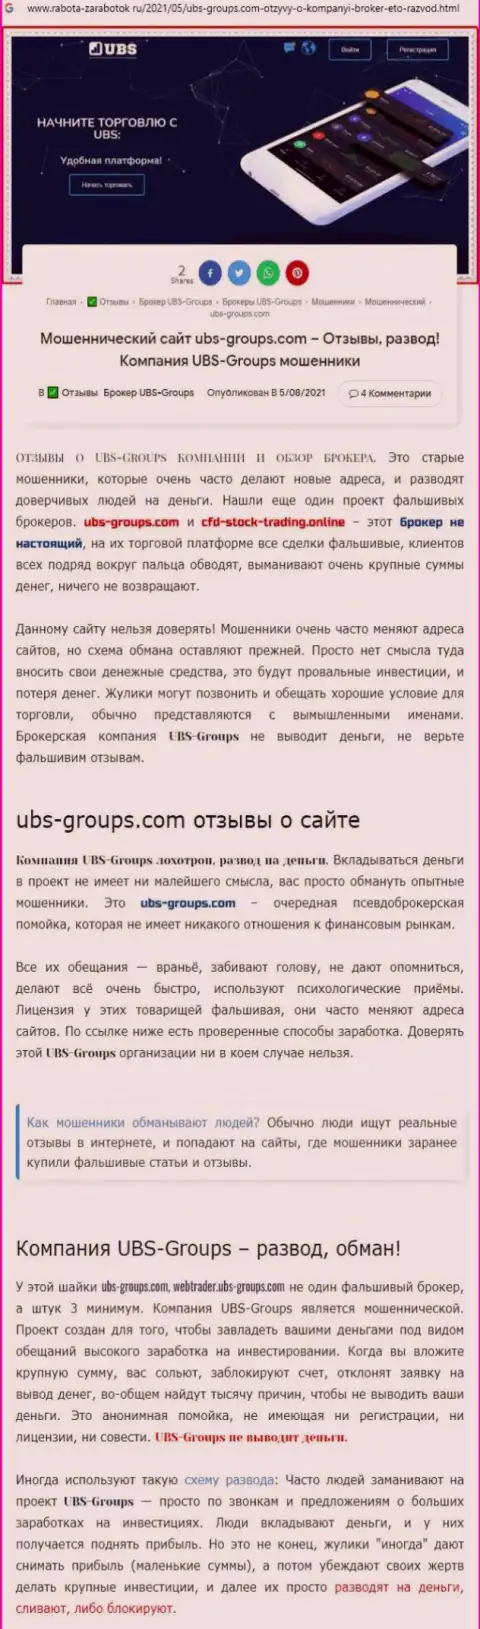 Автор отзыва говорит, что UBSGroups - это ВОРЮГИ !!!